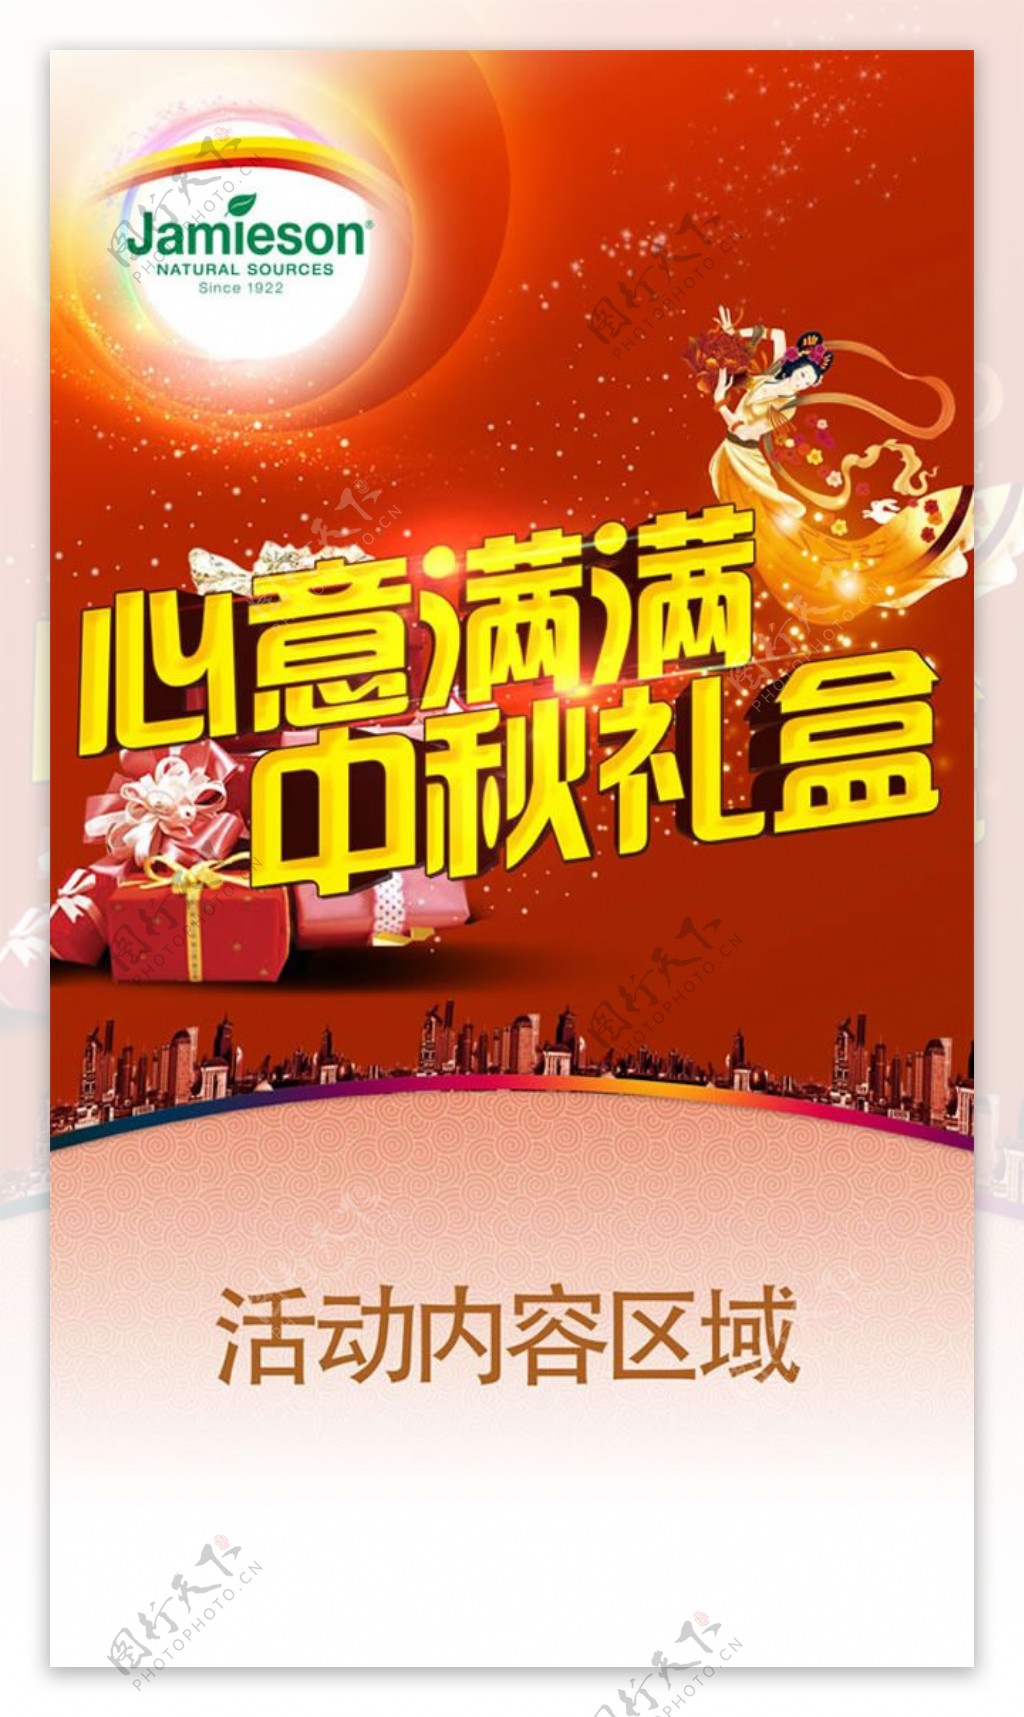 中秋节促销活动海报背景psd素材